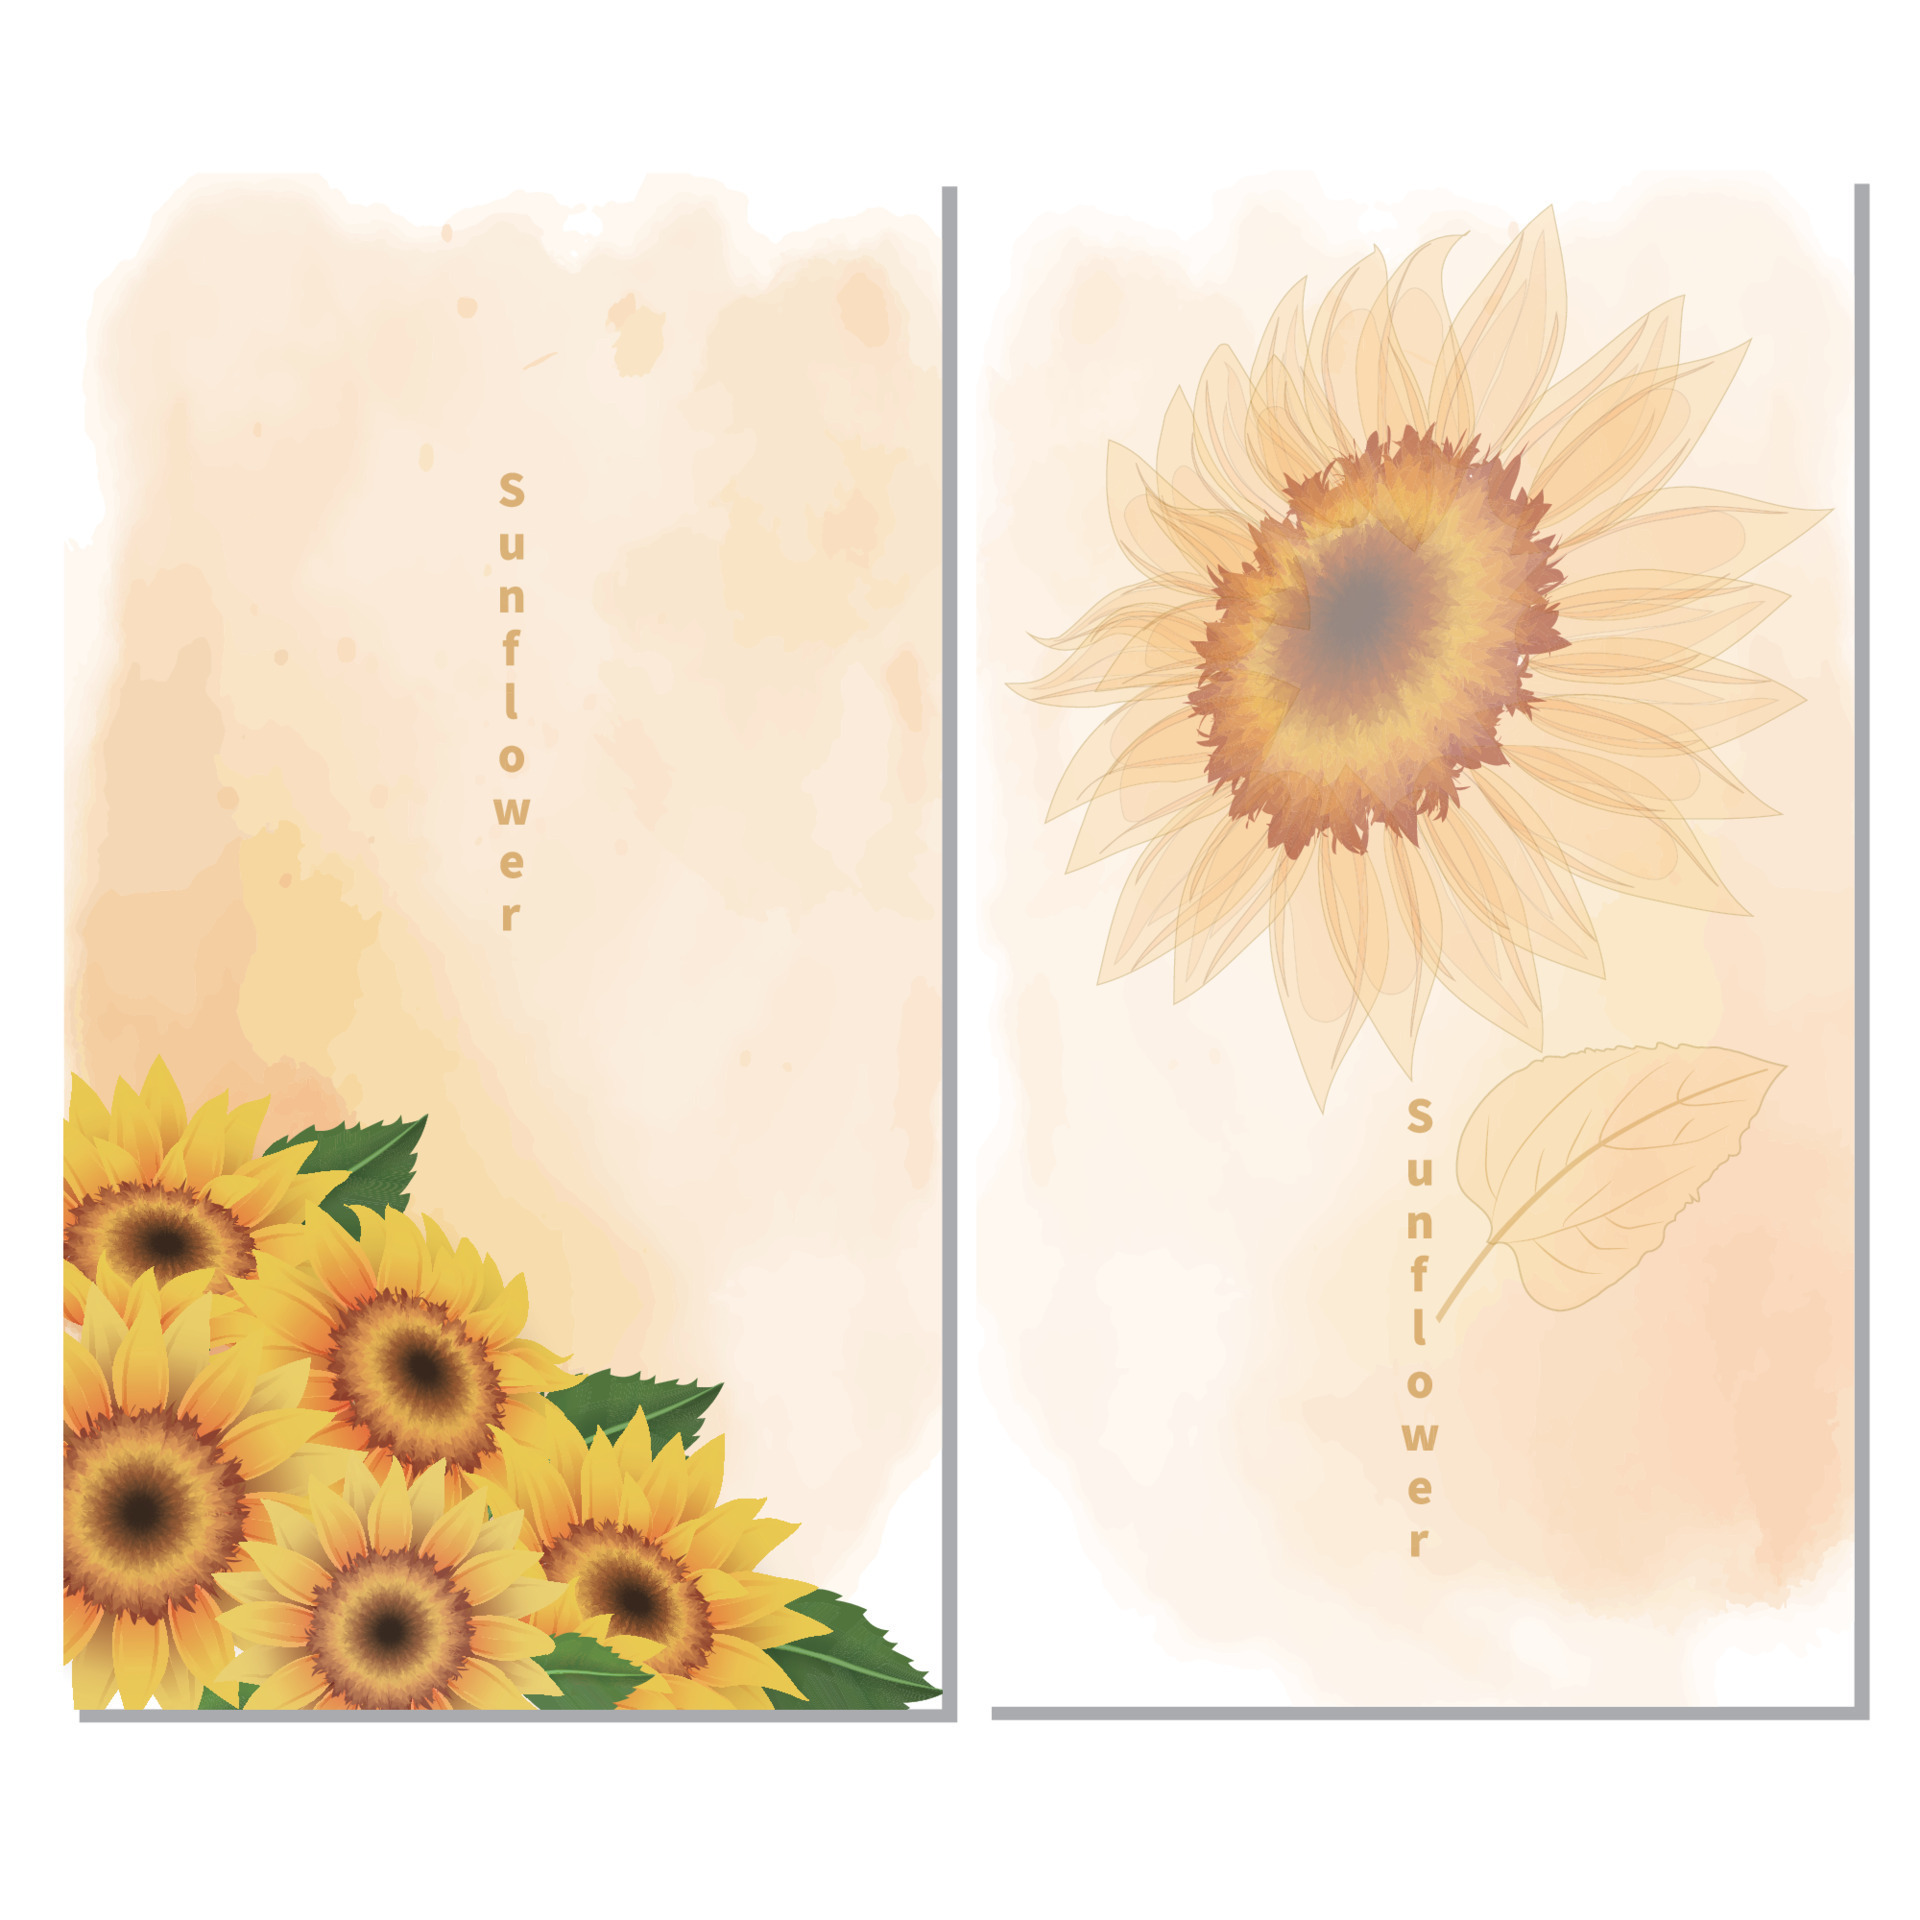 Sunflower art print HD wallpapers | Pxfuel